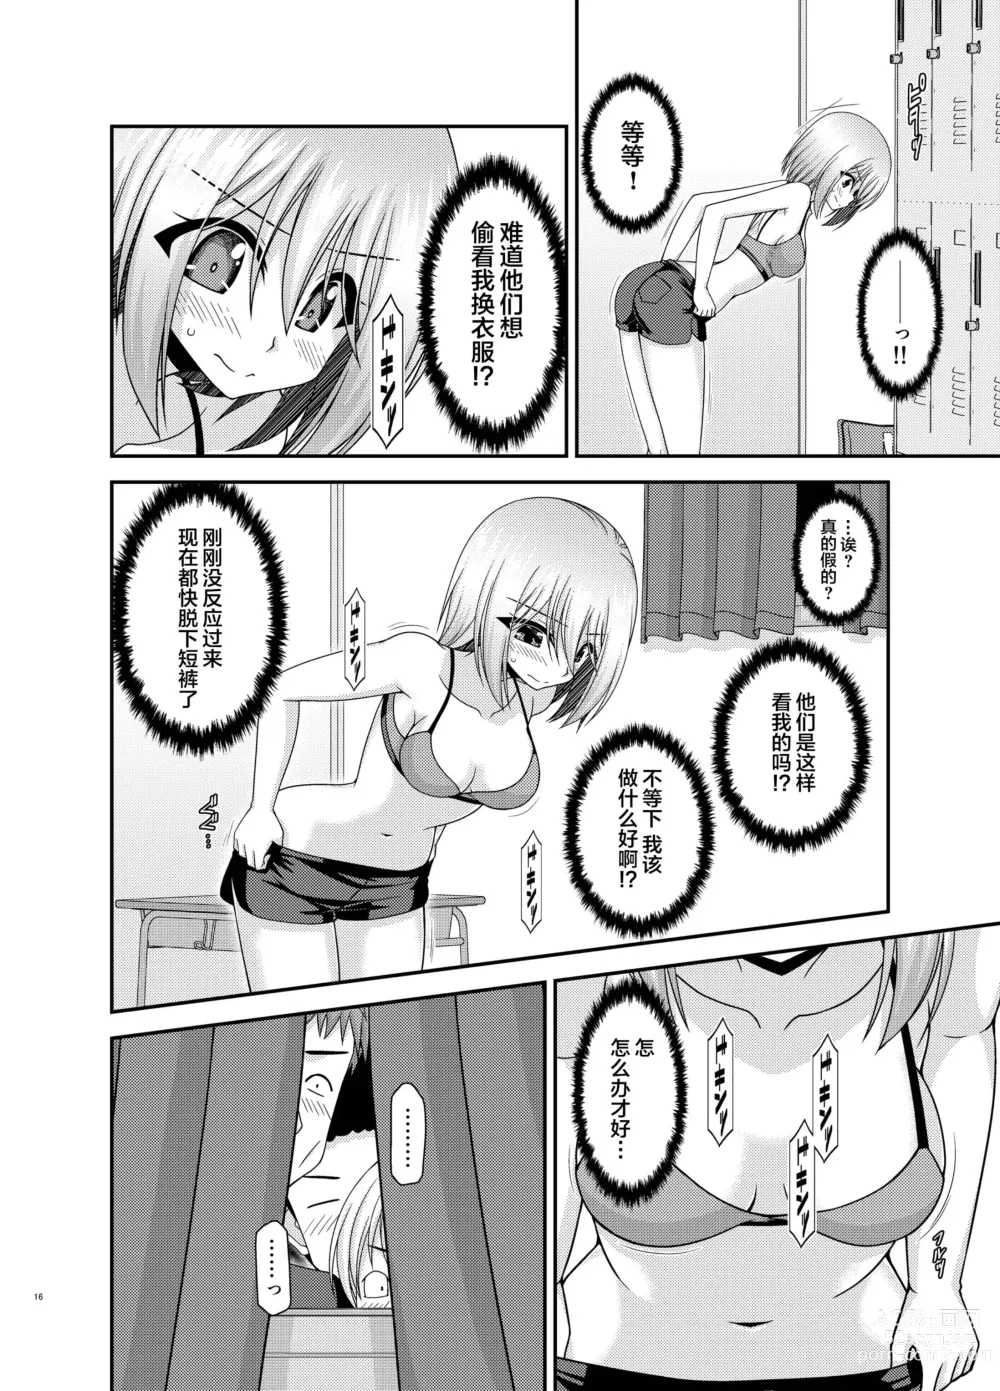 Page 13 of manga Nozokare Roshutsu Shoujo